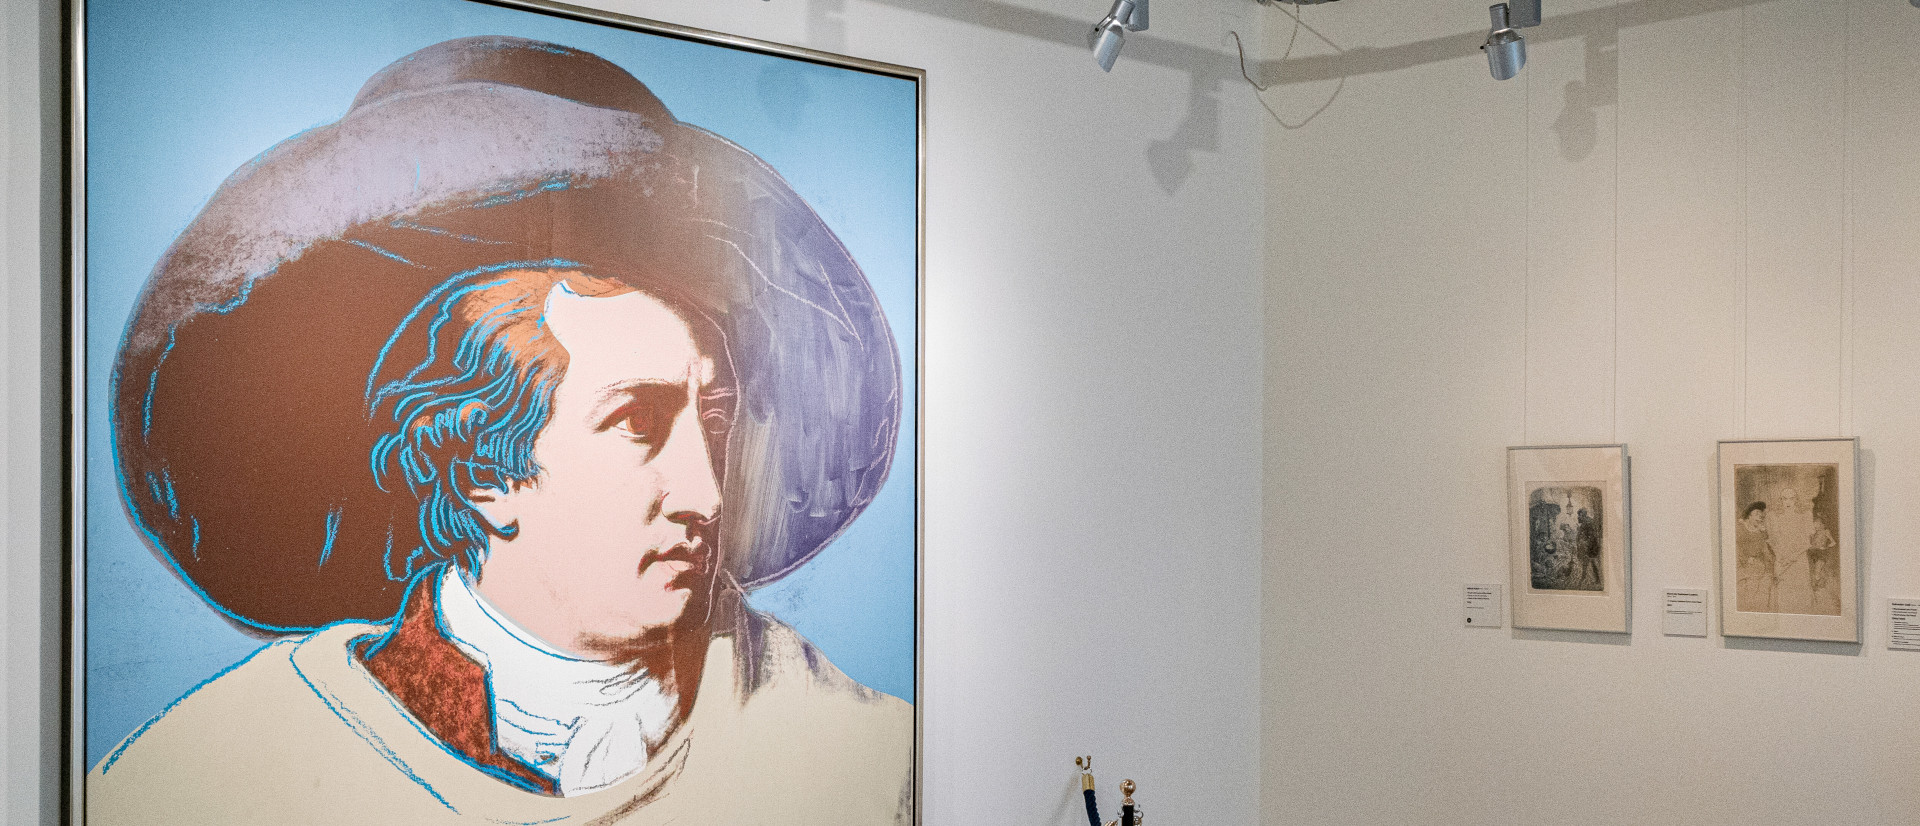 Porträt von Johann Wolfgang von Goethe von dem Künstler Andy Warhol